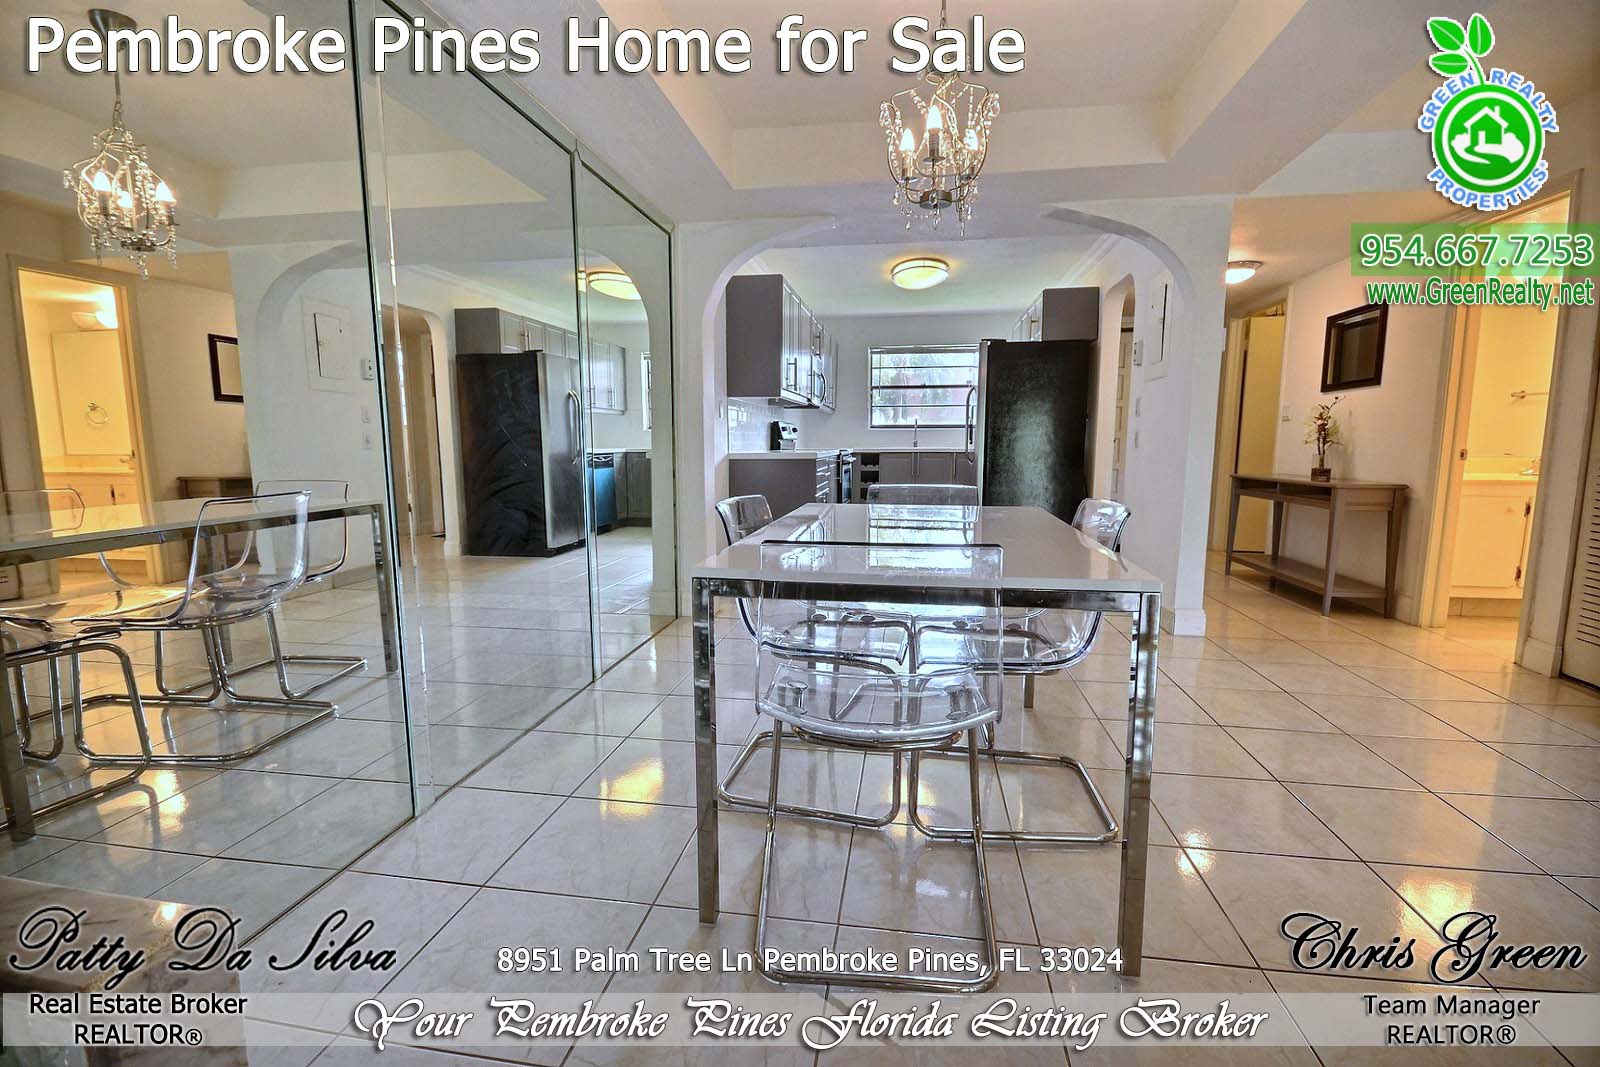 Pembroke Pines Homes For Sale - 8951 Palm Tree Lane (10)